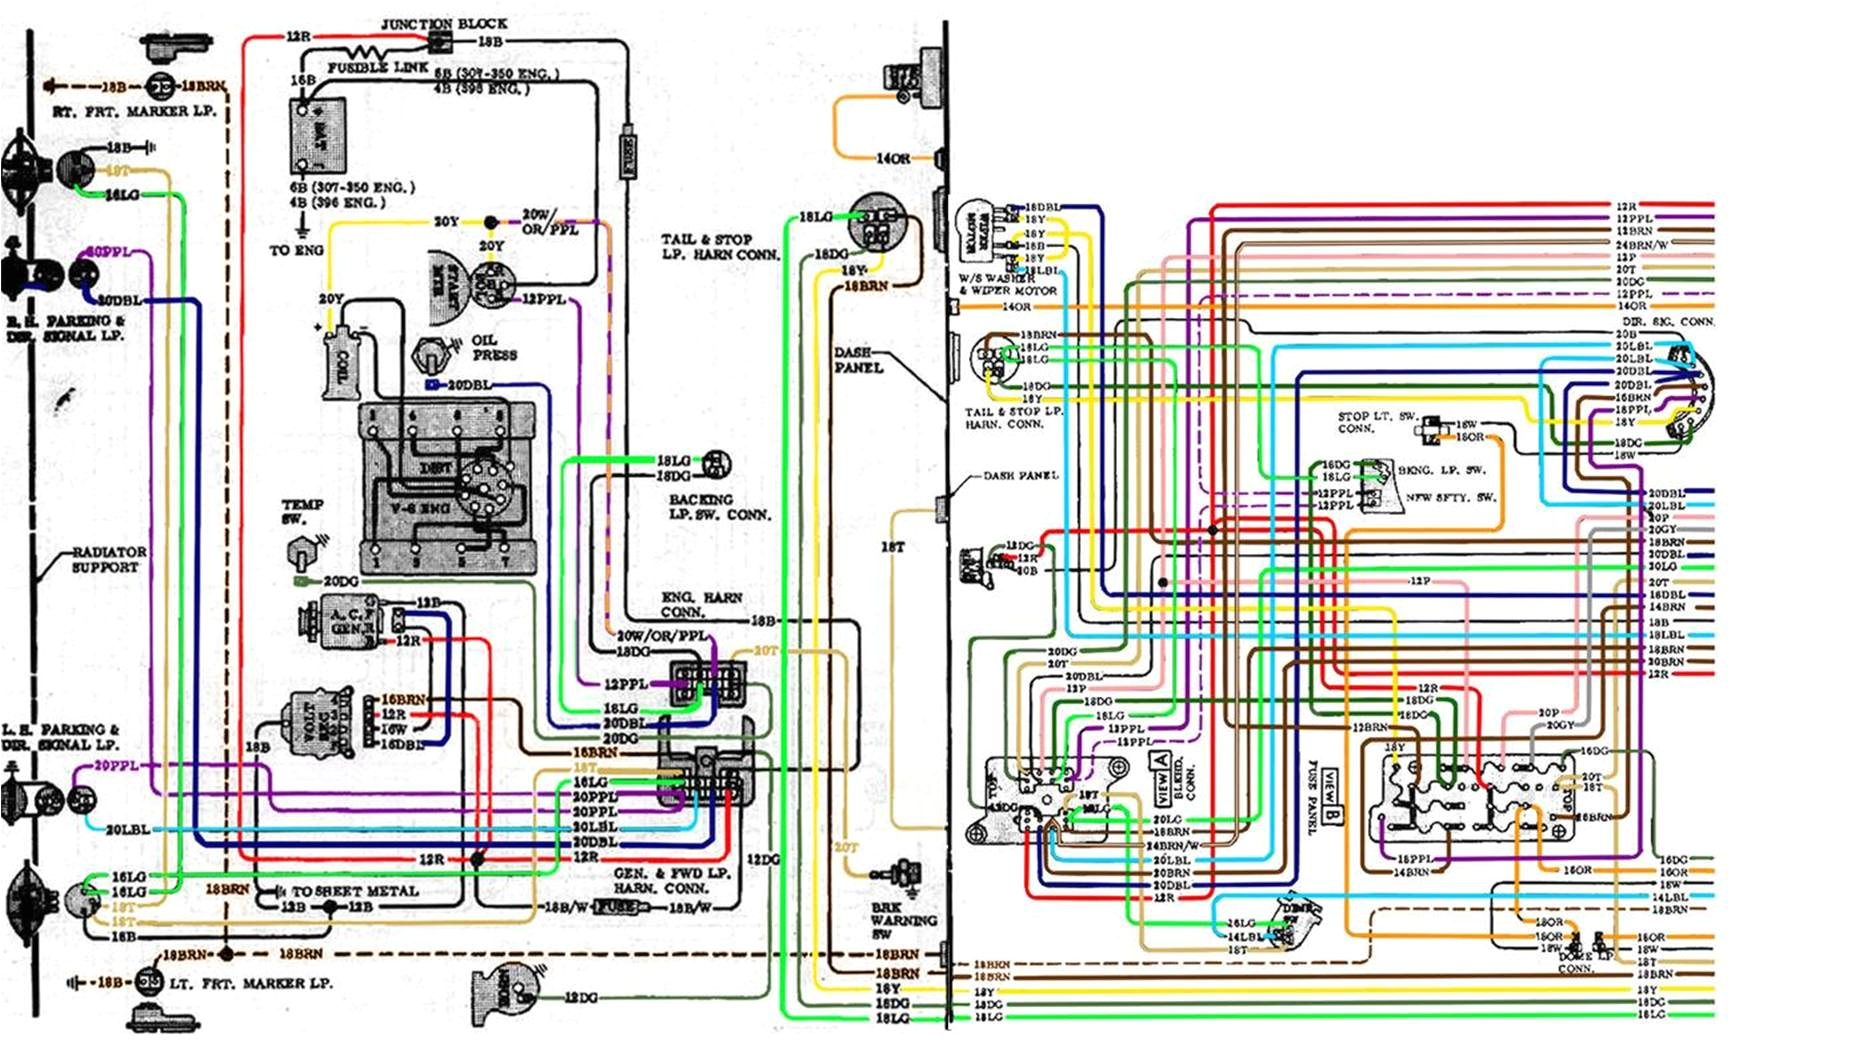 68 chevy c10 wiring harness schema diagram database 68 gmc wiring harness diagram